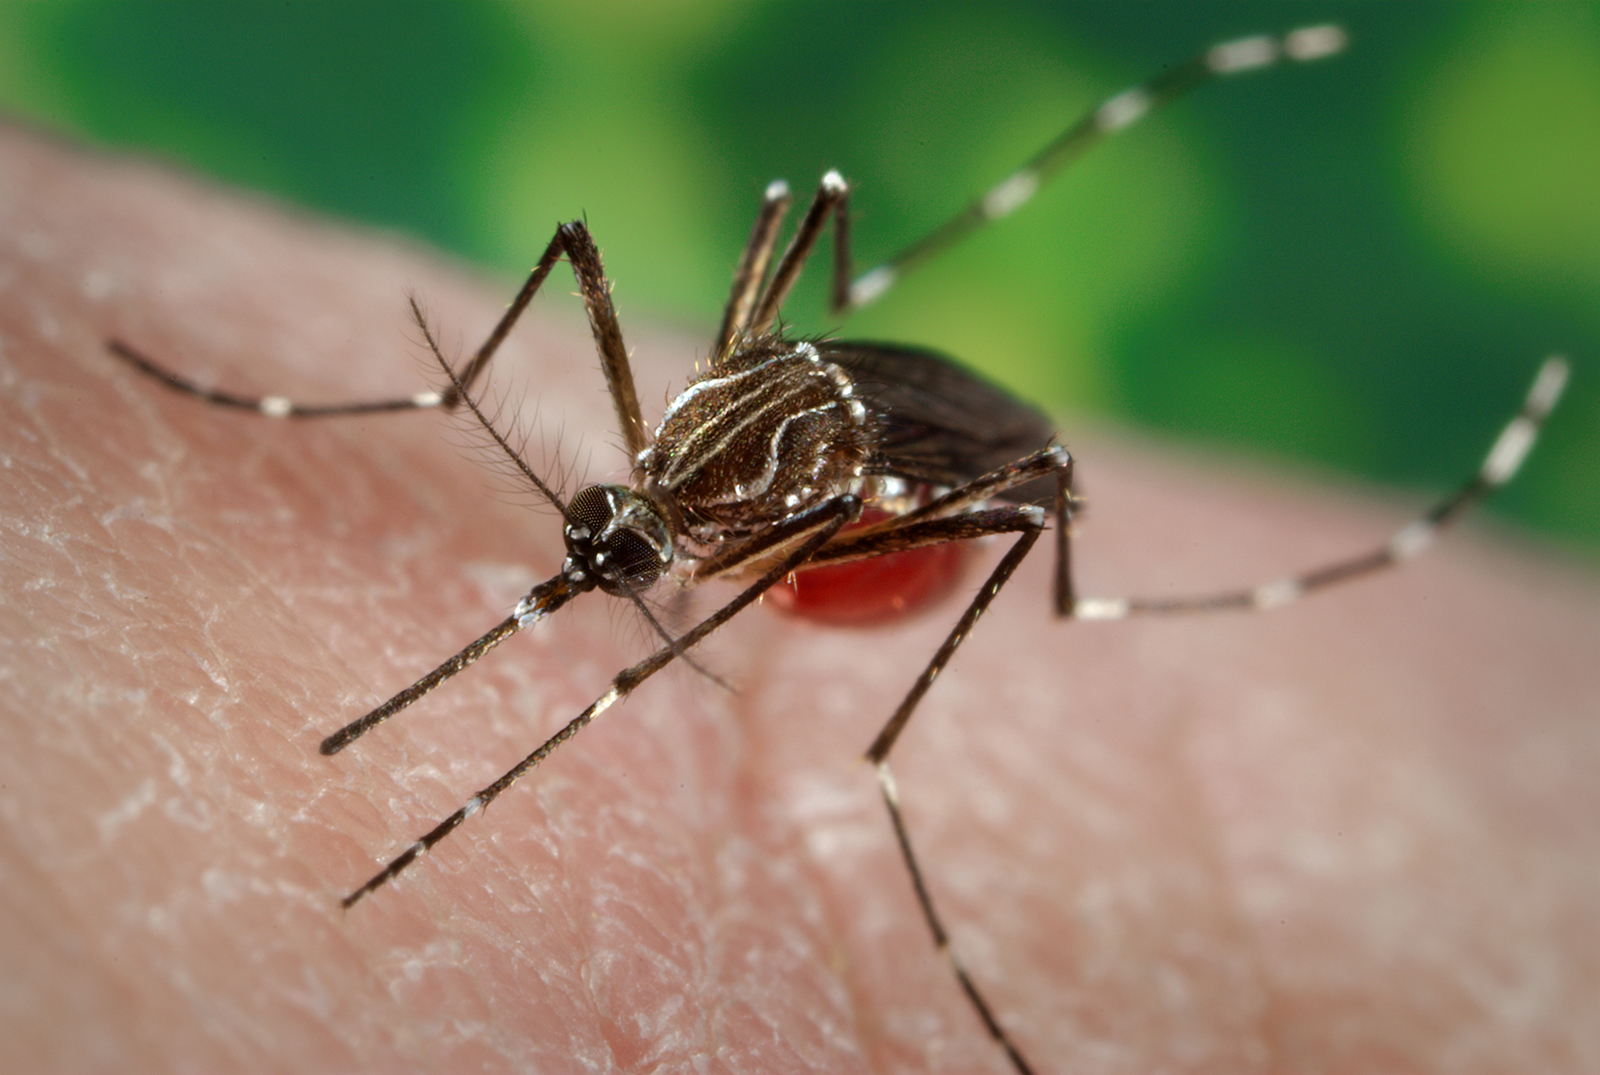  Incrementan 400% casos de dengue en Querétaro en el último año: Ssa